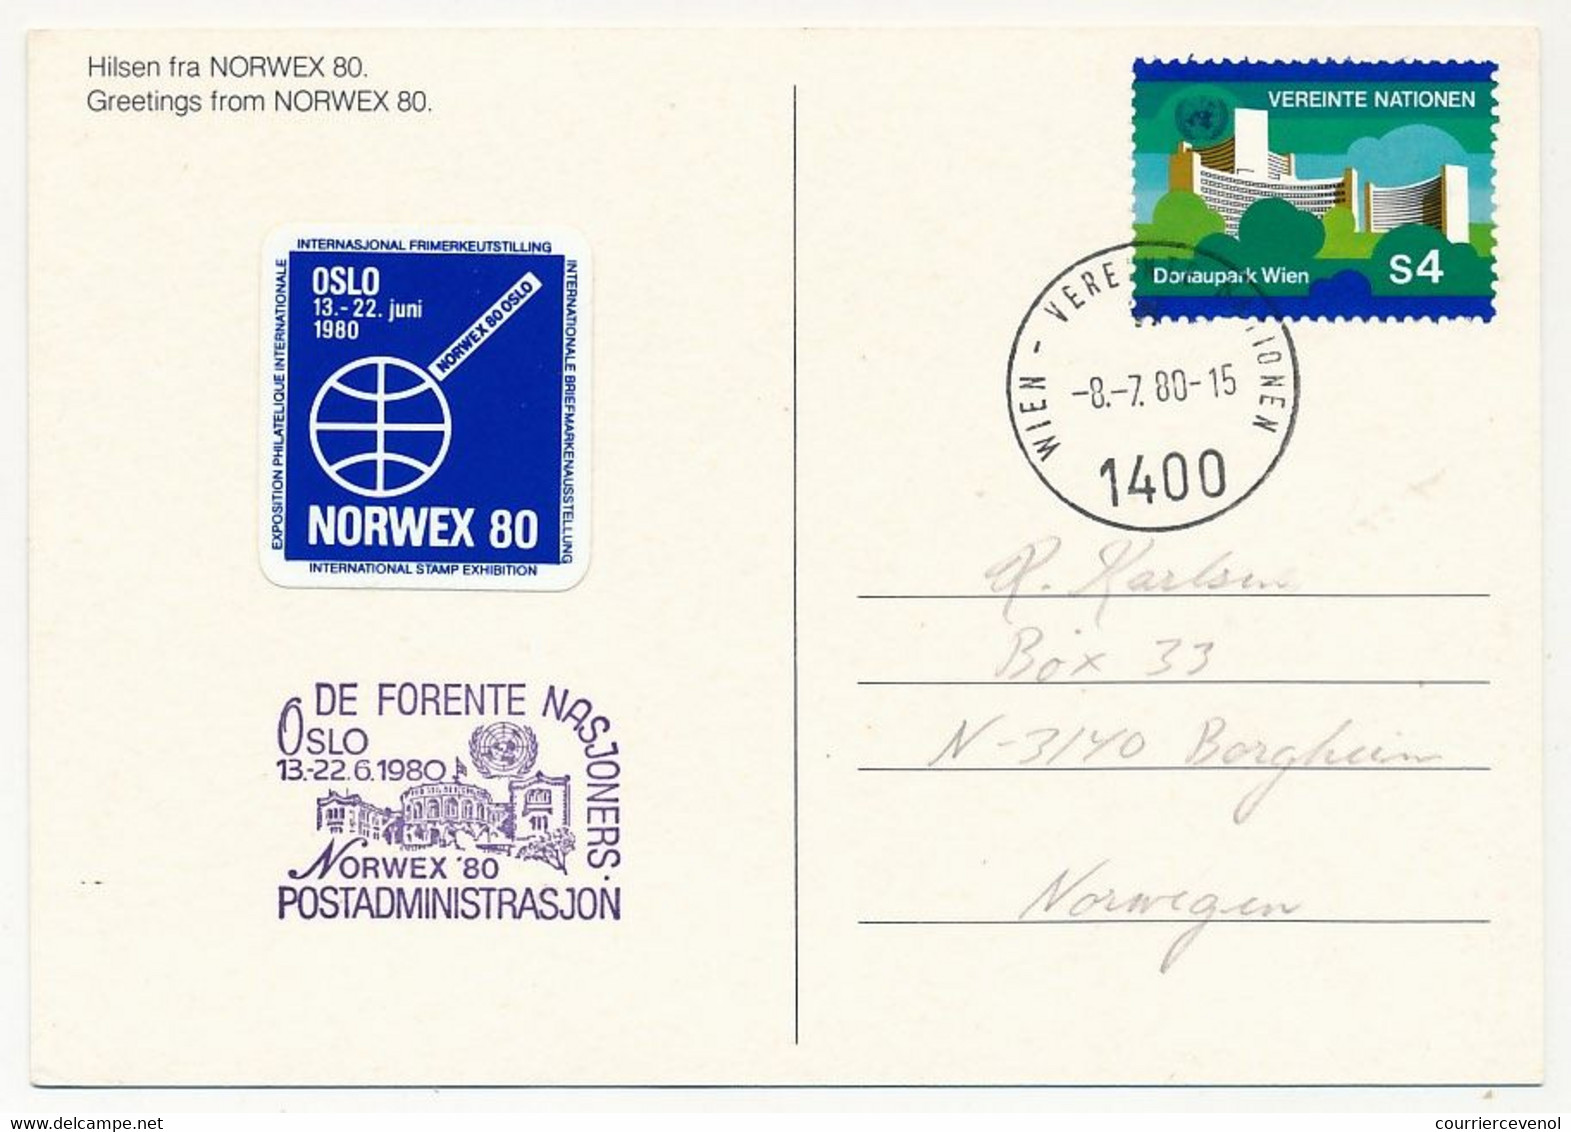 NORVEGE / ONU - 6 documents ONU avec vignette bleue "NORWEX 80" oblit diverses et Stand ONU à l'expo - OSLO 1980